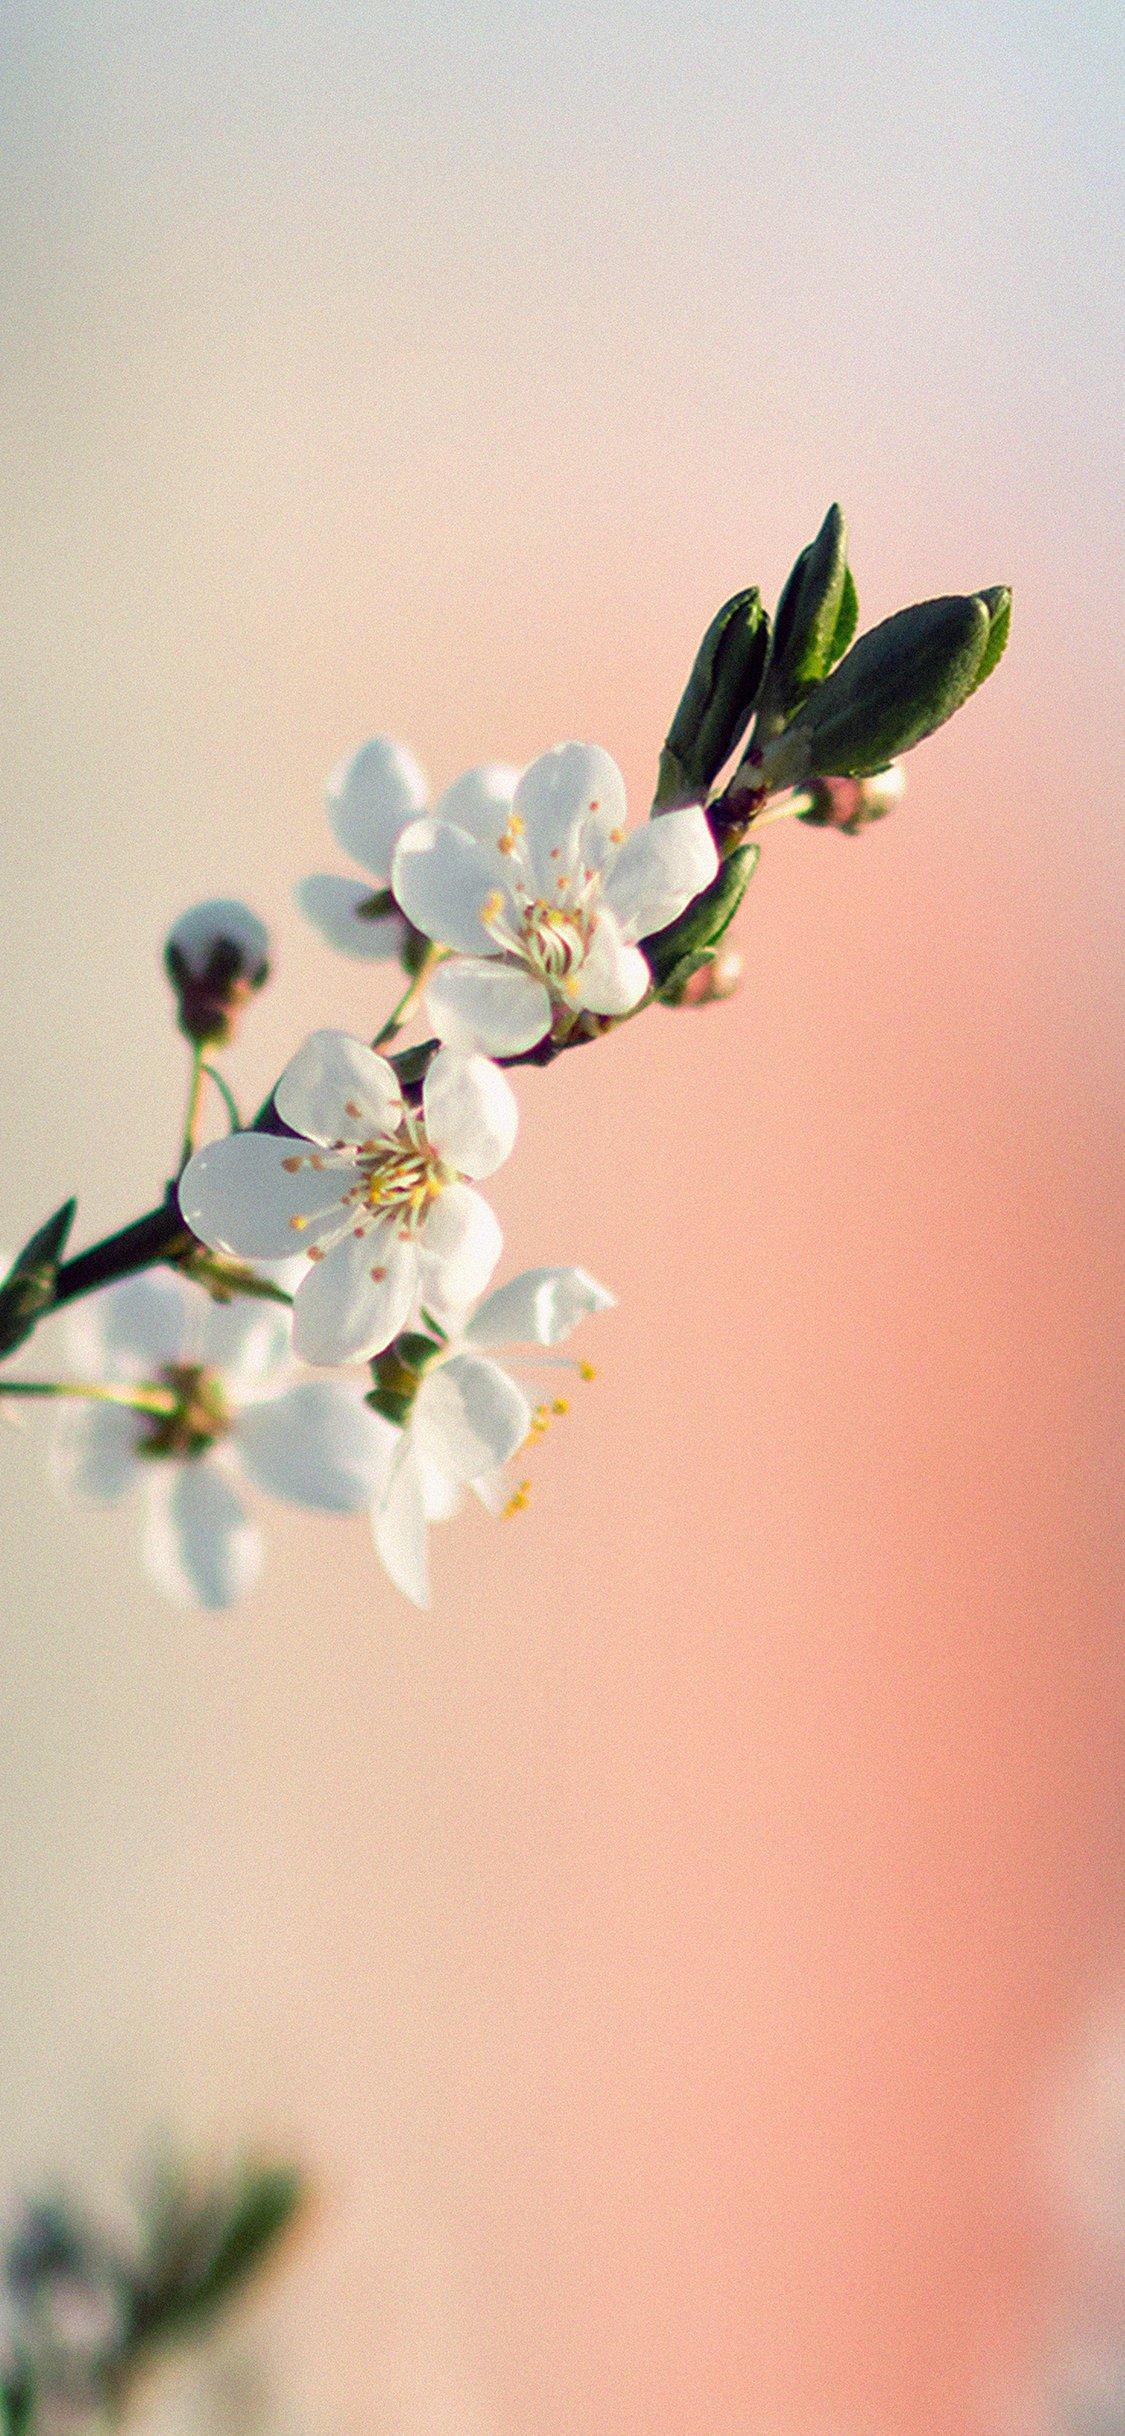 spring flower white delight